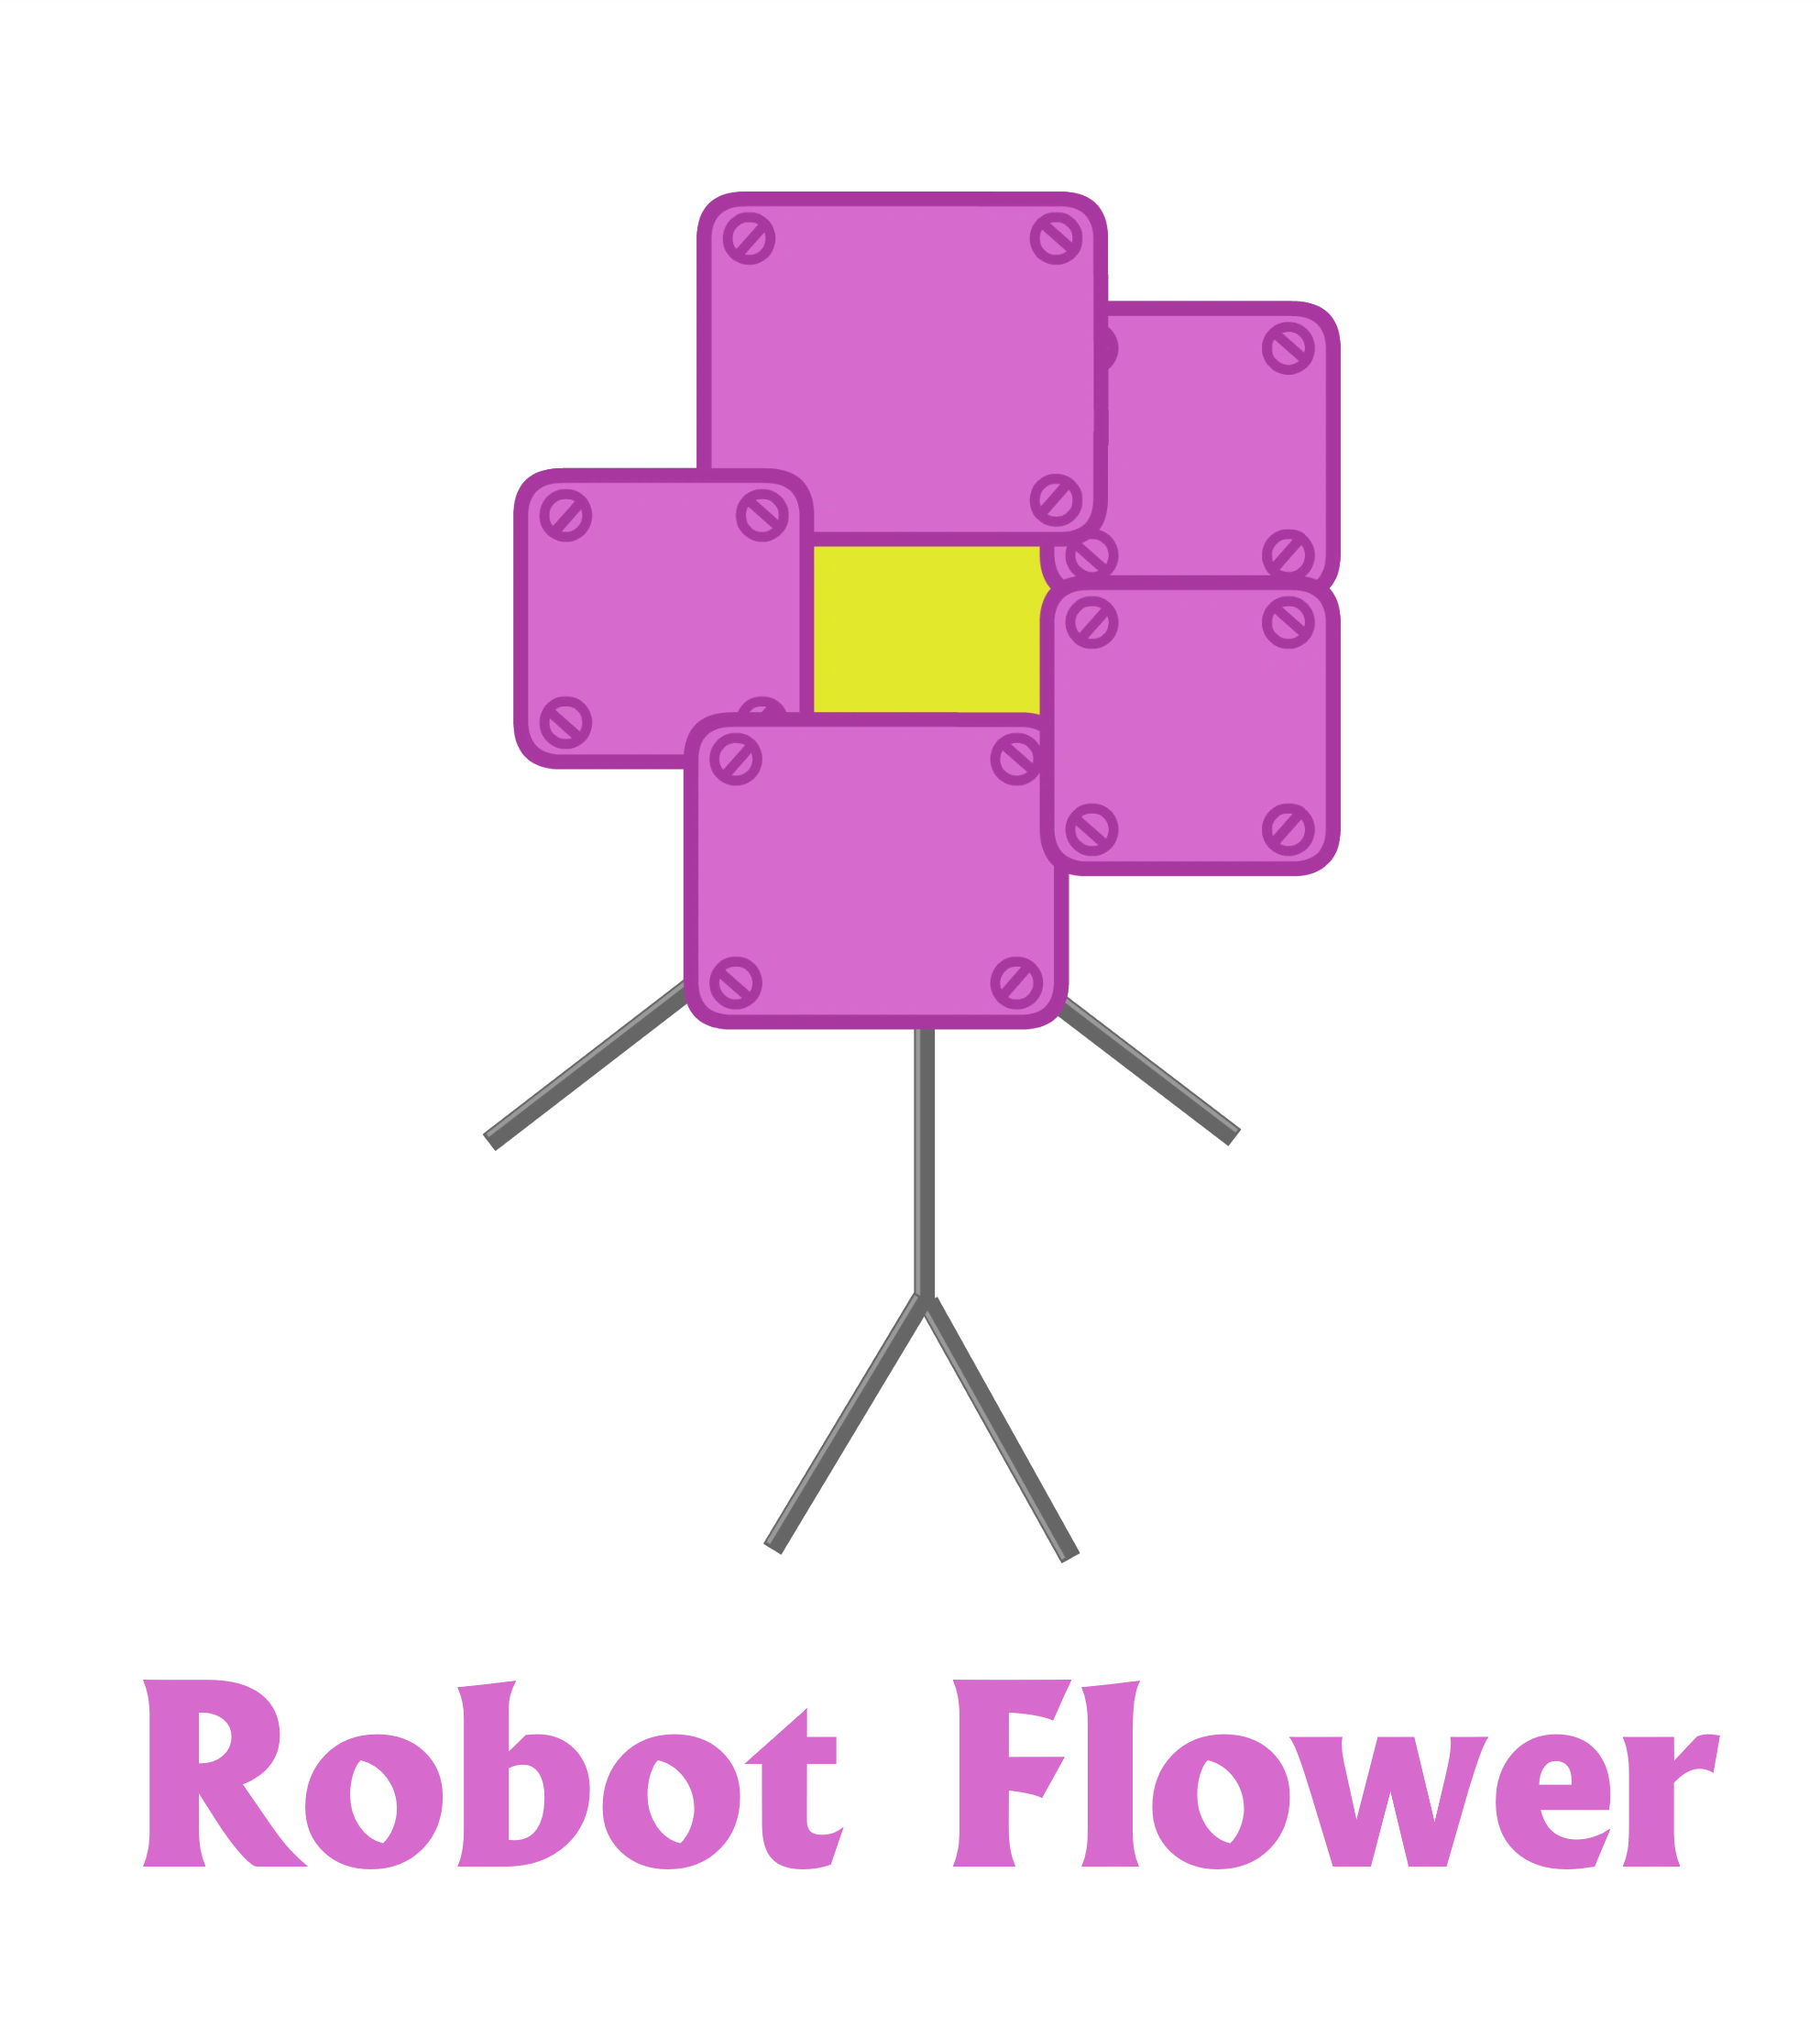 Optagelsesgebyr tab Gooey Robot Flower (v2) by lukesamsthesecond on DeviantArt